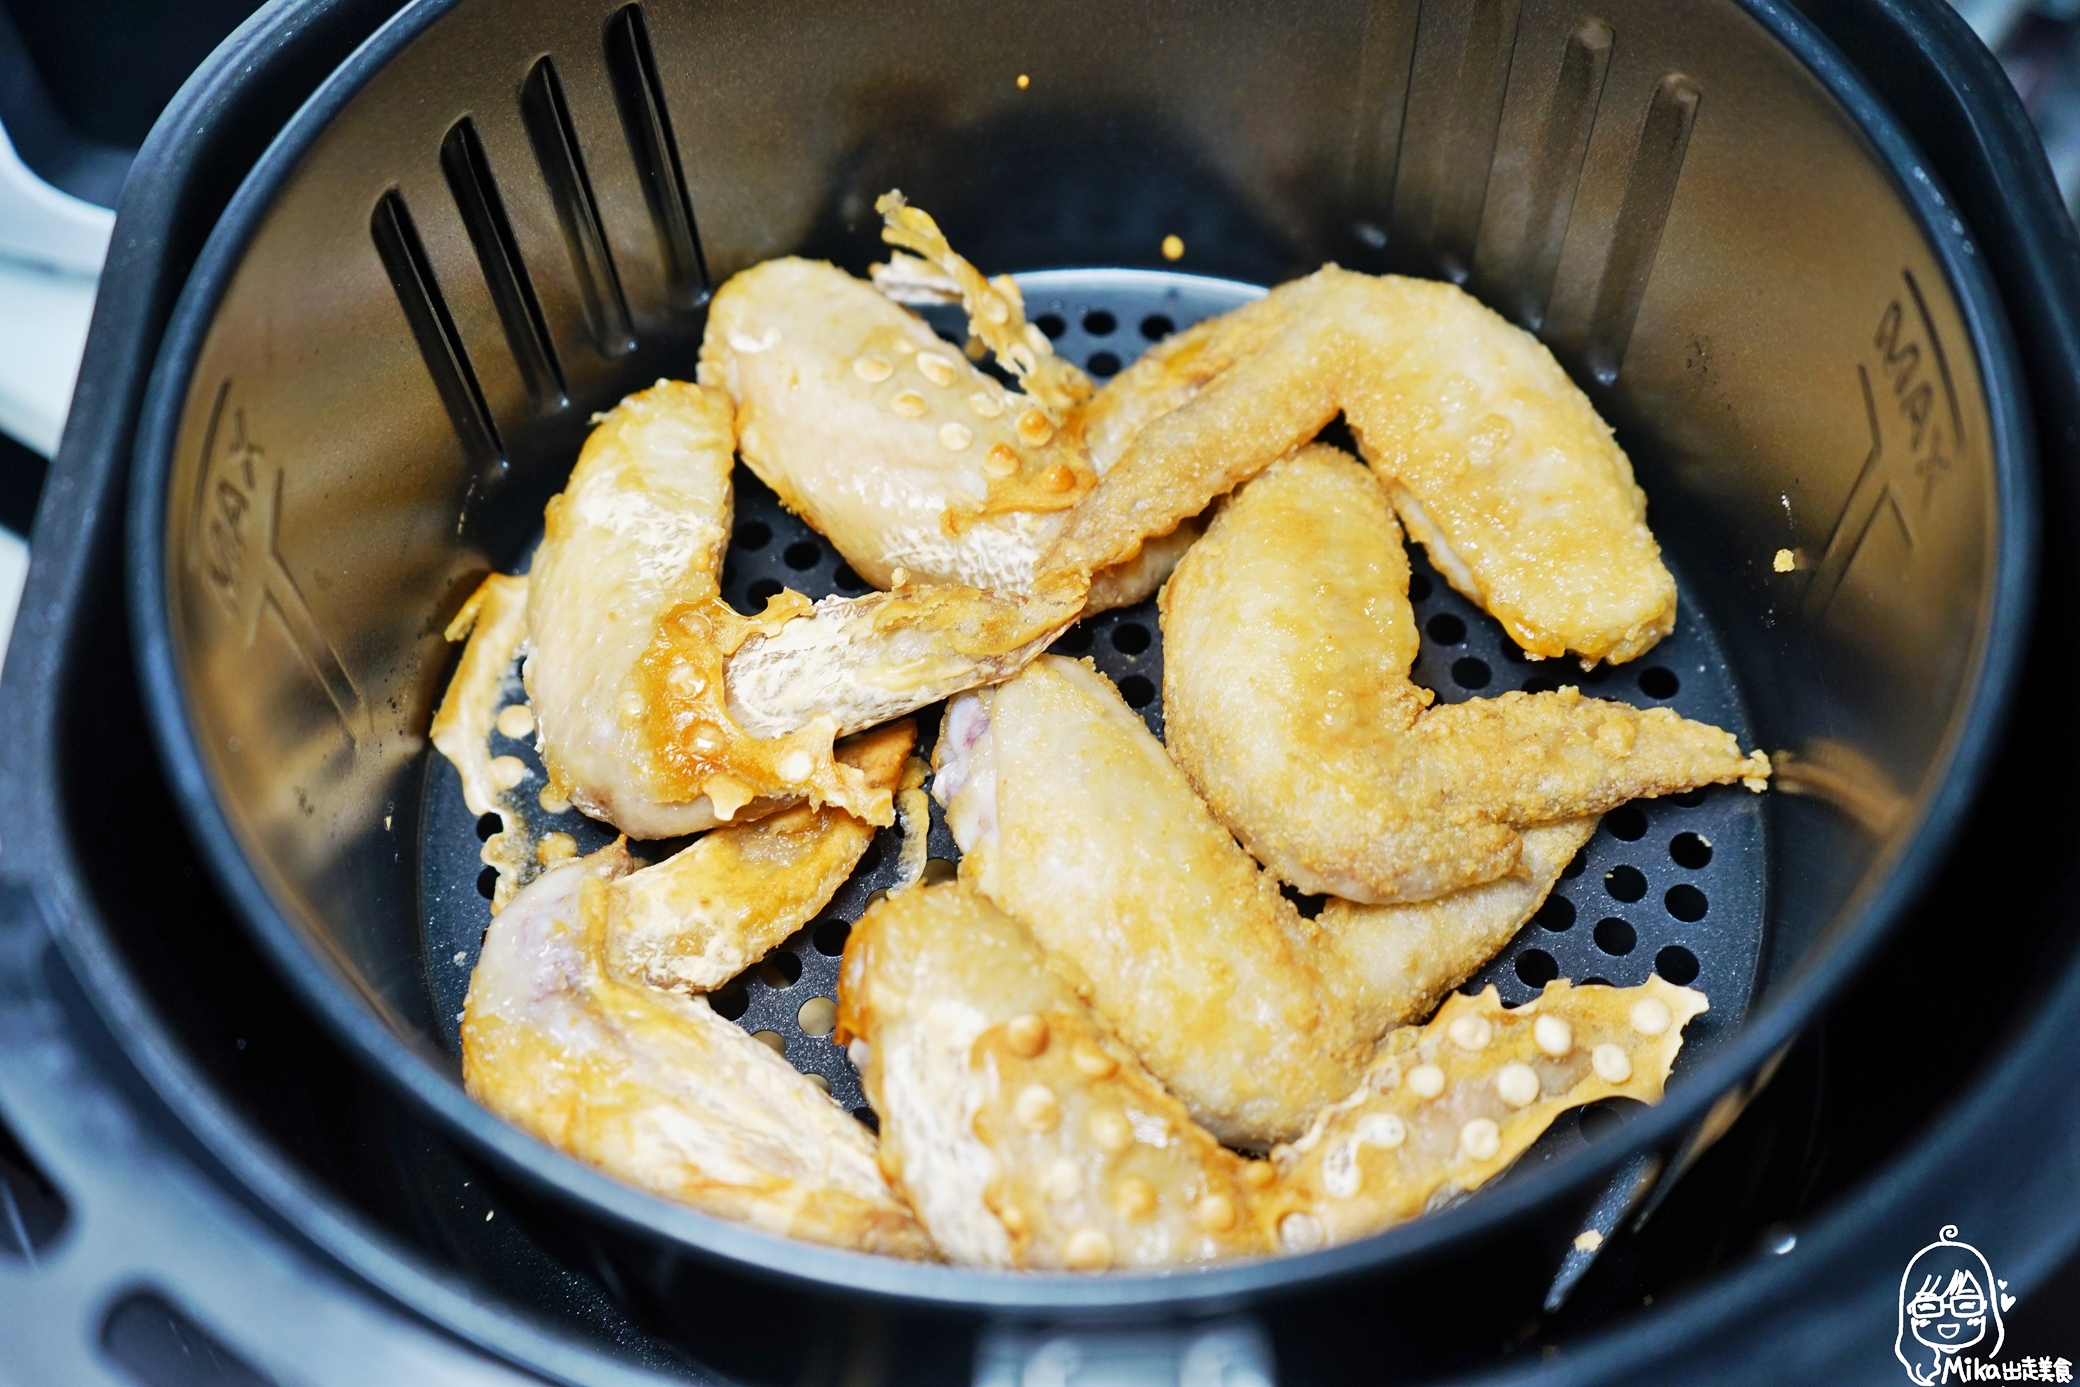 【食譜】 日清醬油味炸雞翅｜芷要上菜 氣炸鍋出好料  善用日清炸雞粉 輕鬆做出美味炸物料理。